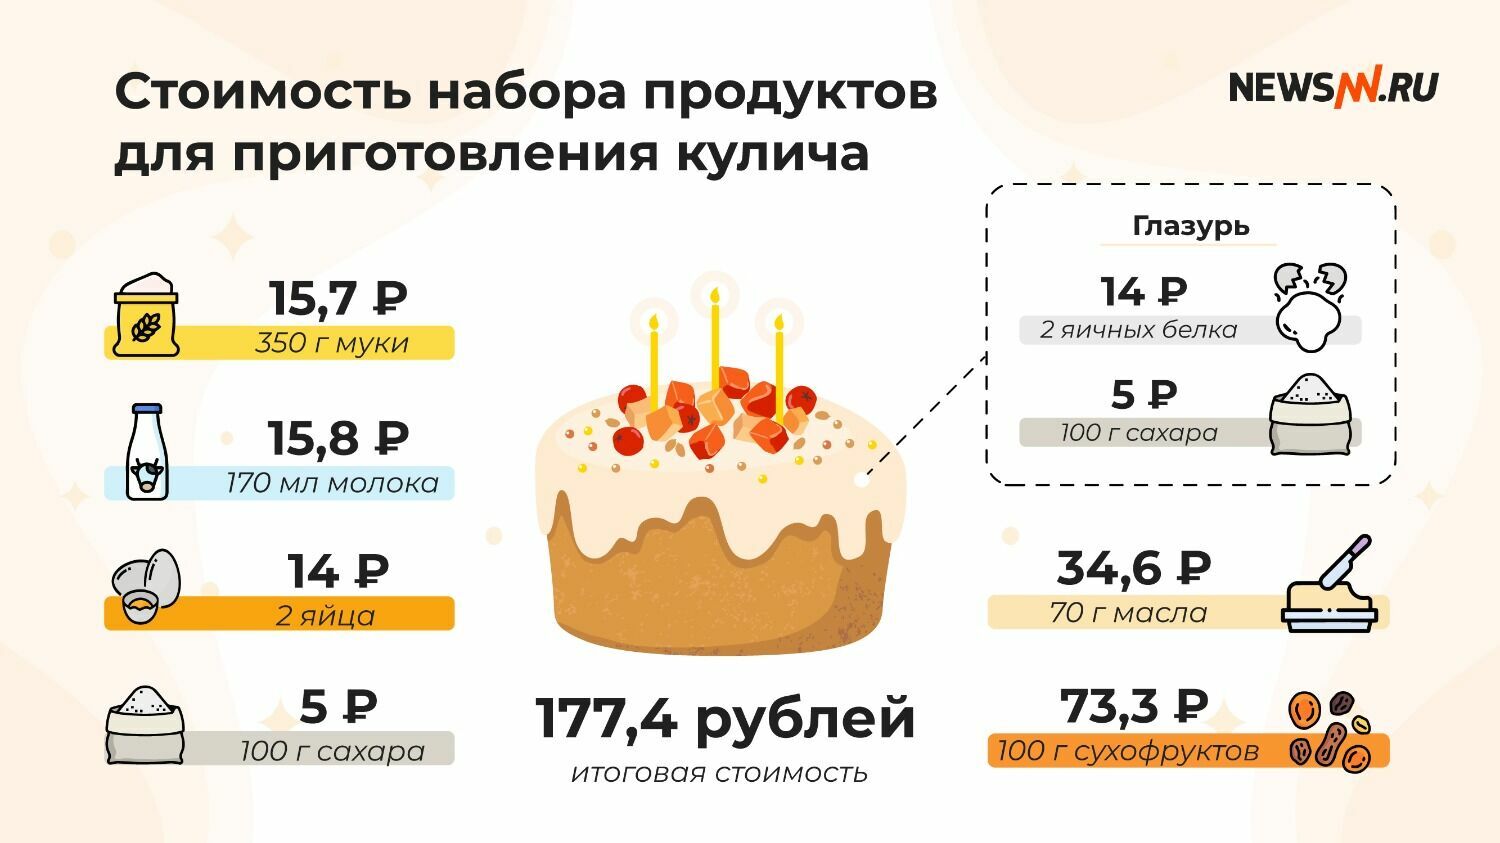 Стоимость набора продуктов для кулича в Нижнем Новгороде